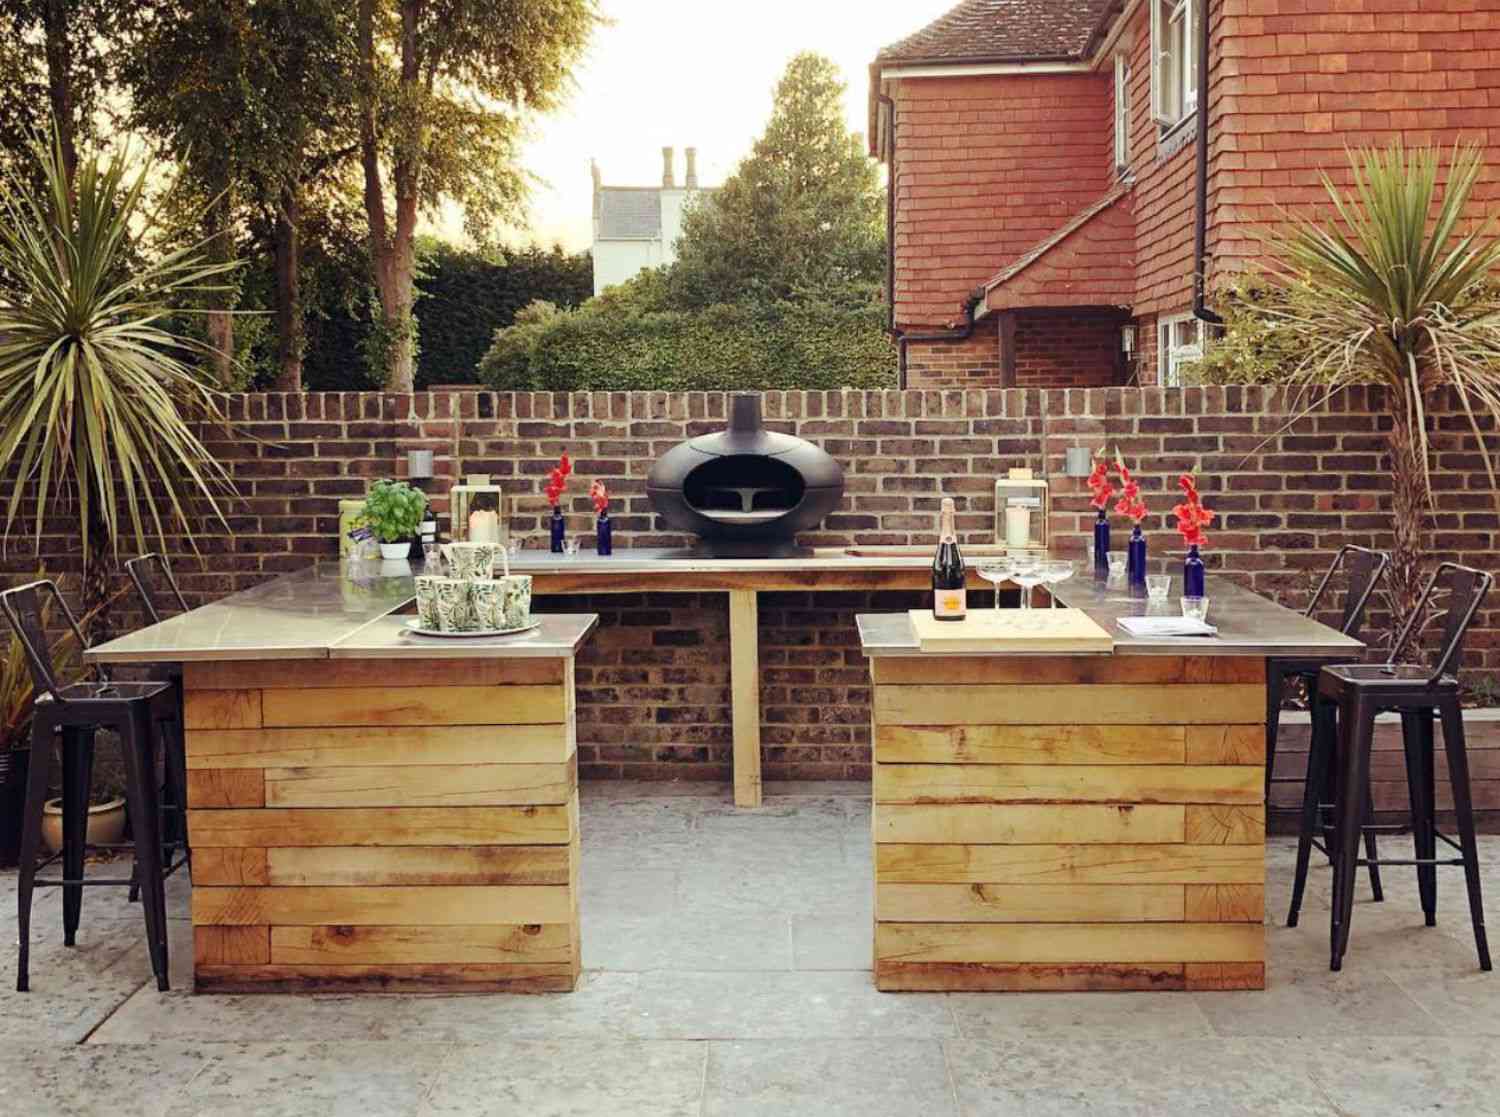 Outdoor Bar Ideas to Upgrade Your Backyard [10 Easy DIYs]